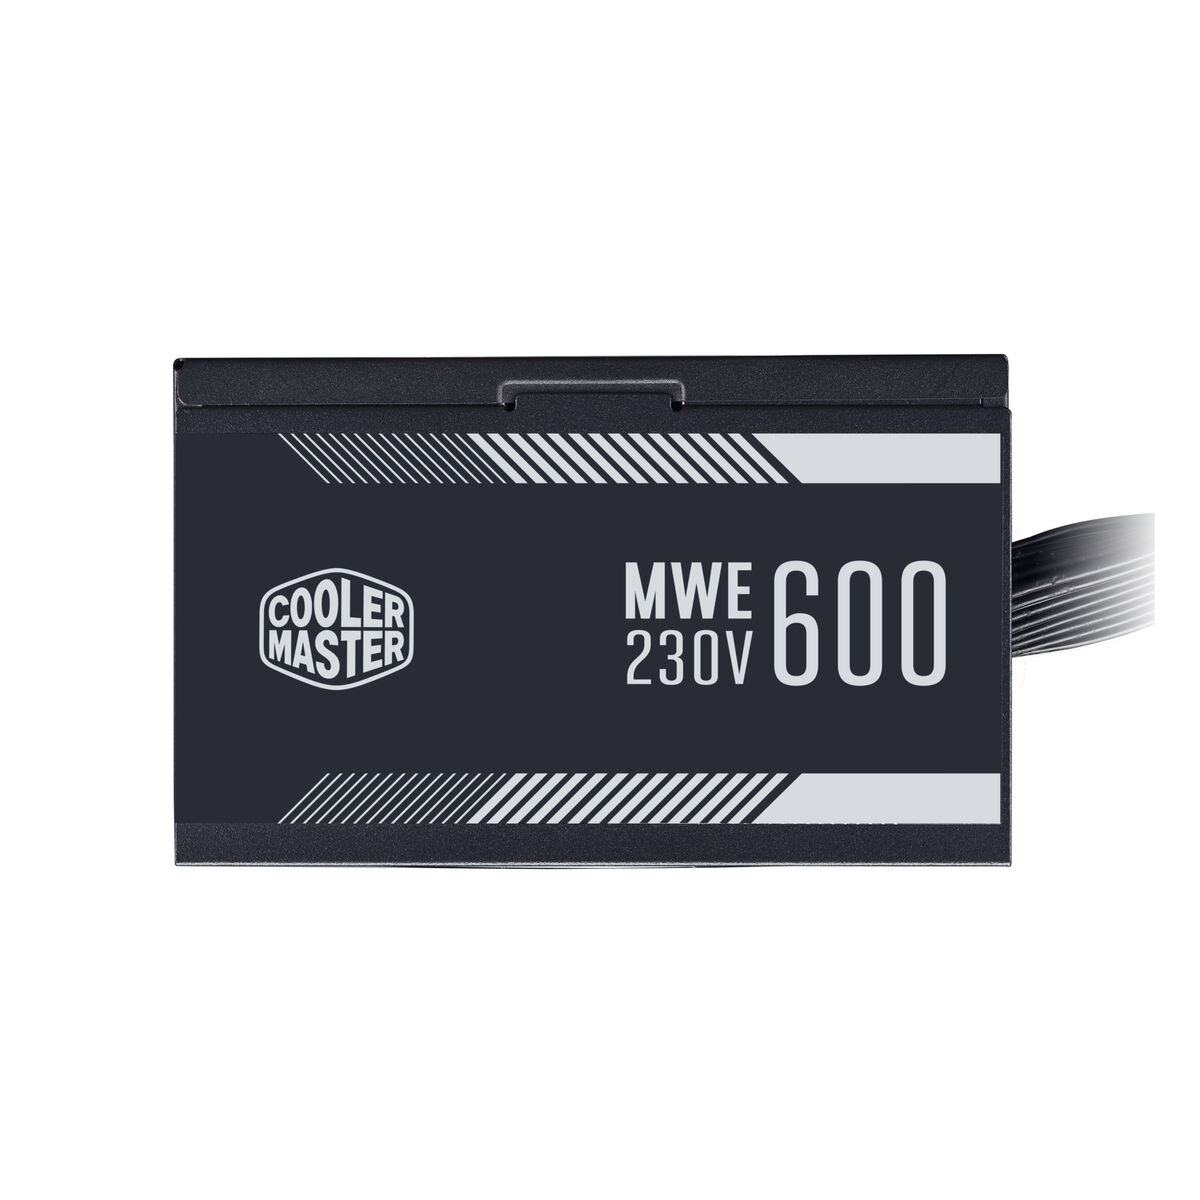 PC COOLER 600 - Watt Netzteil White MASTER MWE V2 230V 600